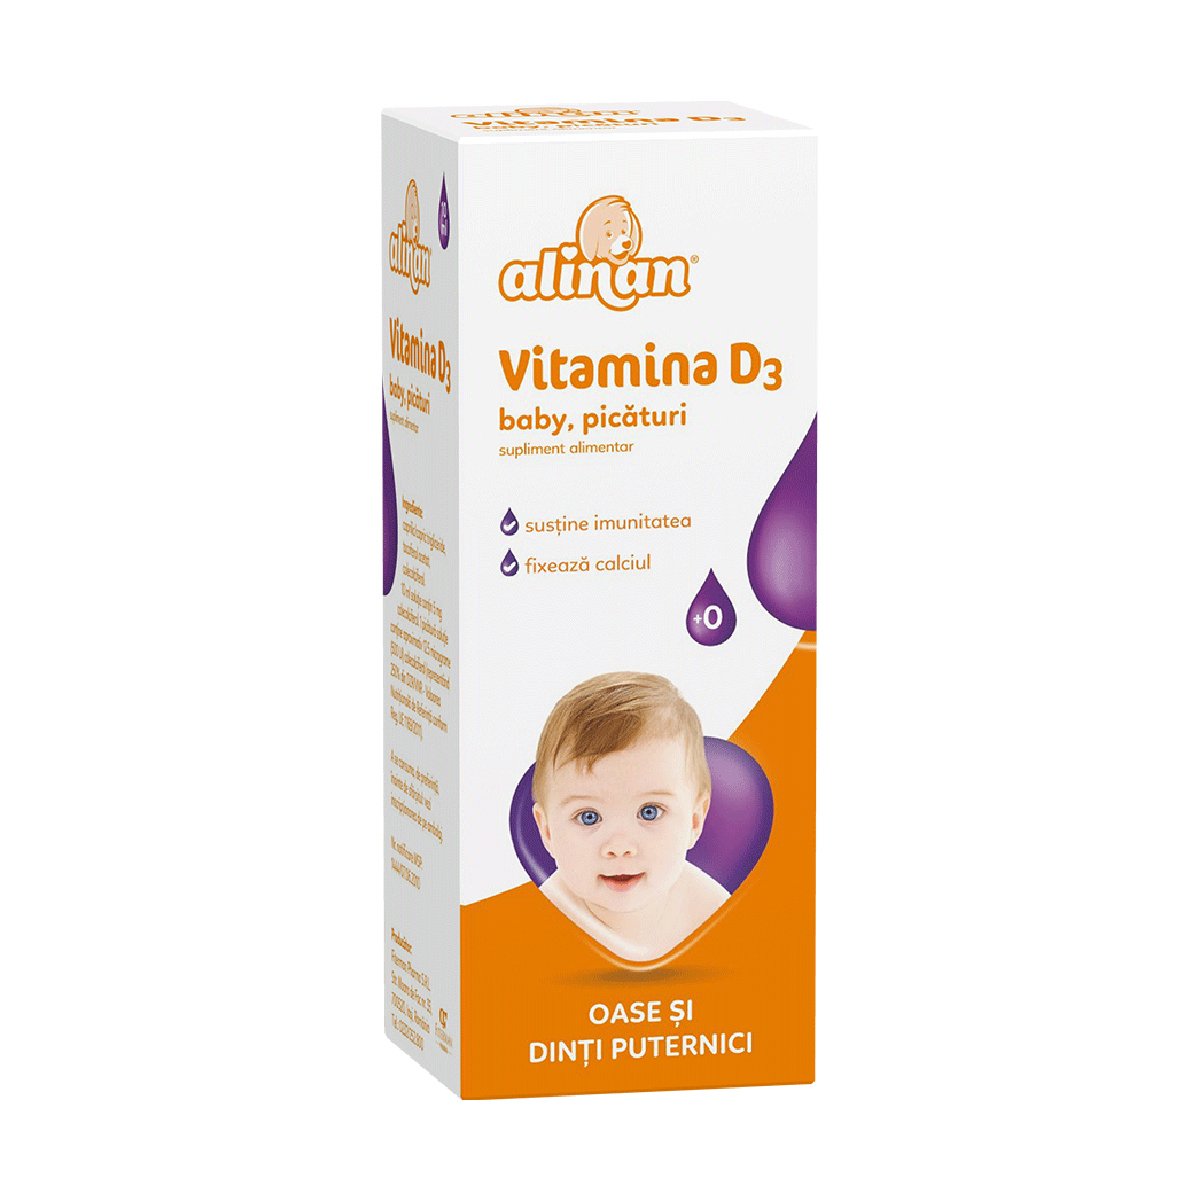 Vitamina D3 baby picaturi, 10 ml, Alinan Alinan